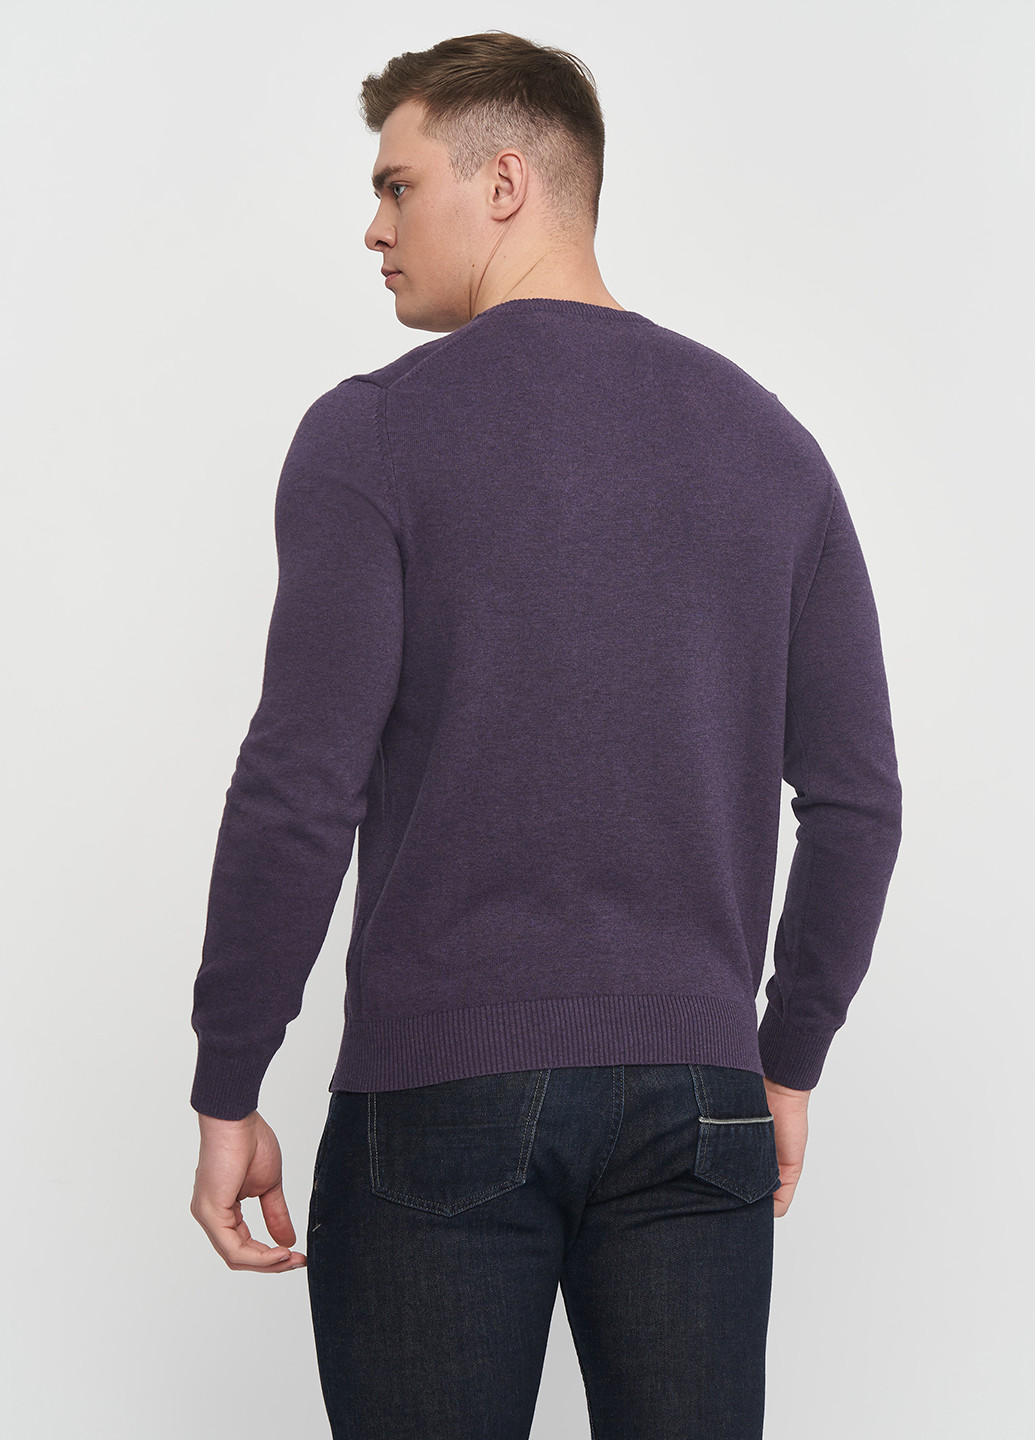 Фиолетовый демисезонный пуловер пуловер Lerros